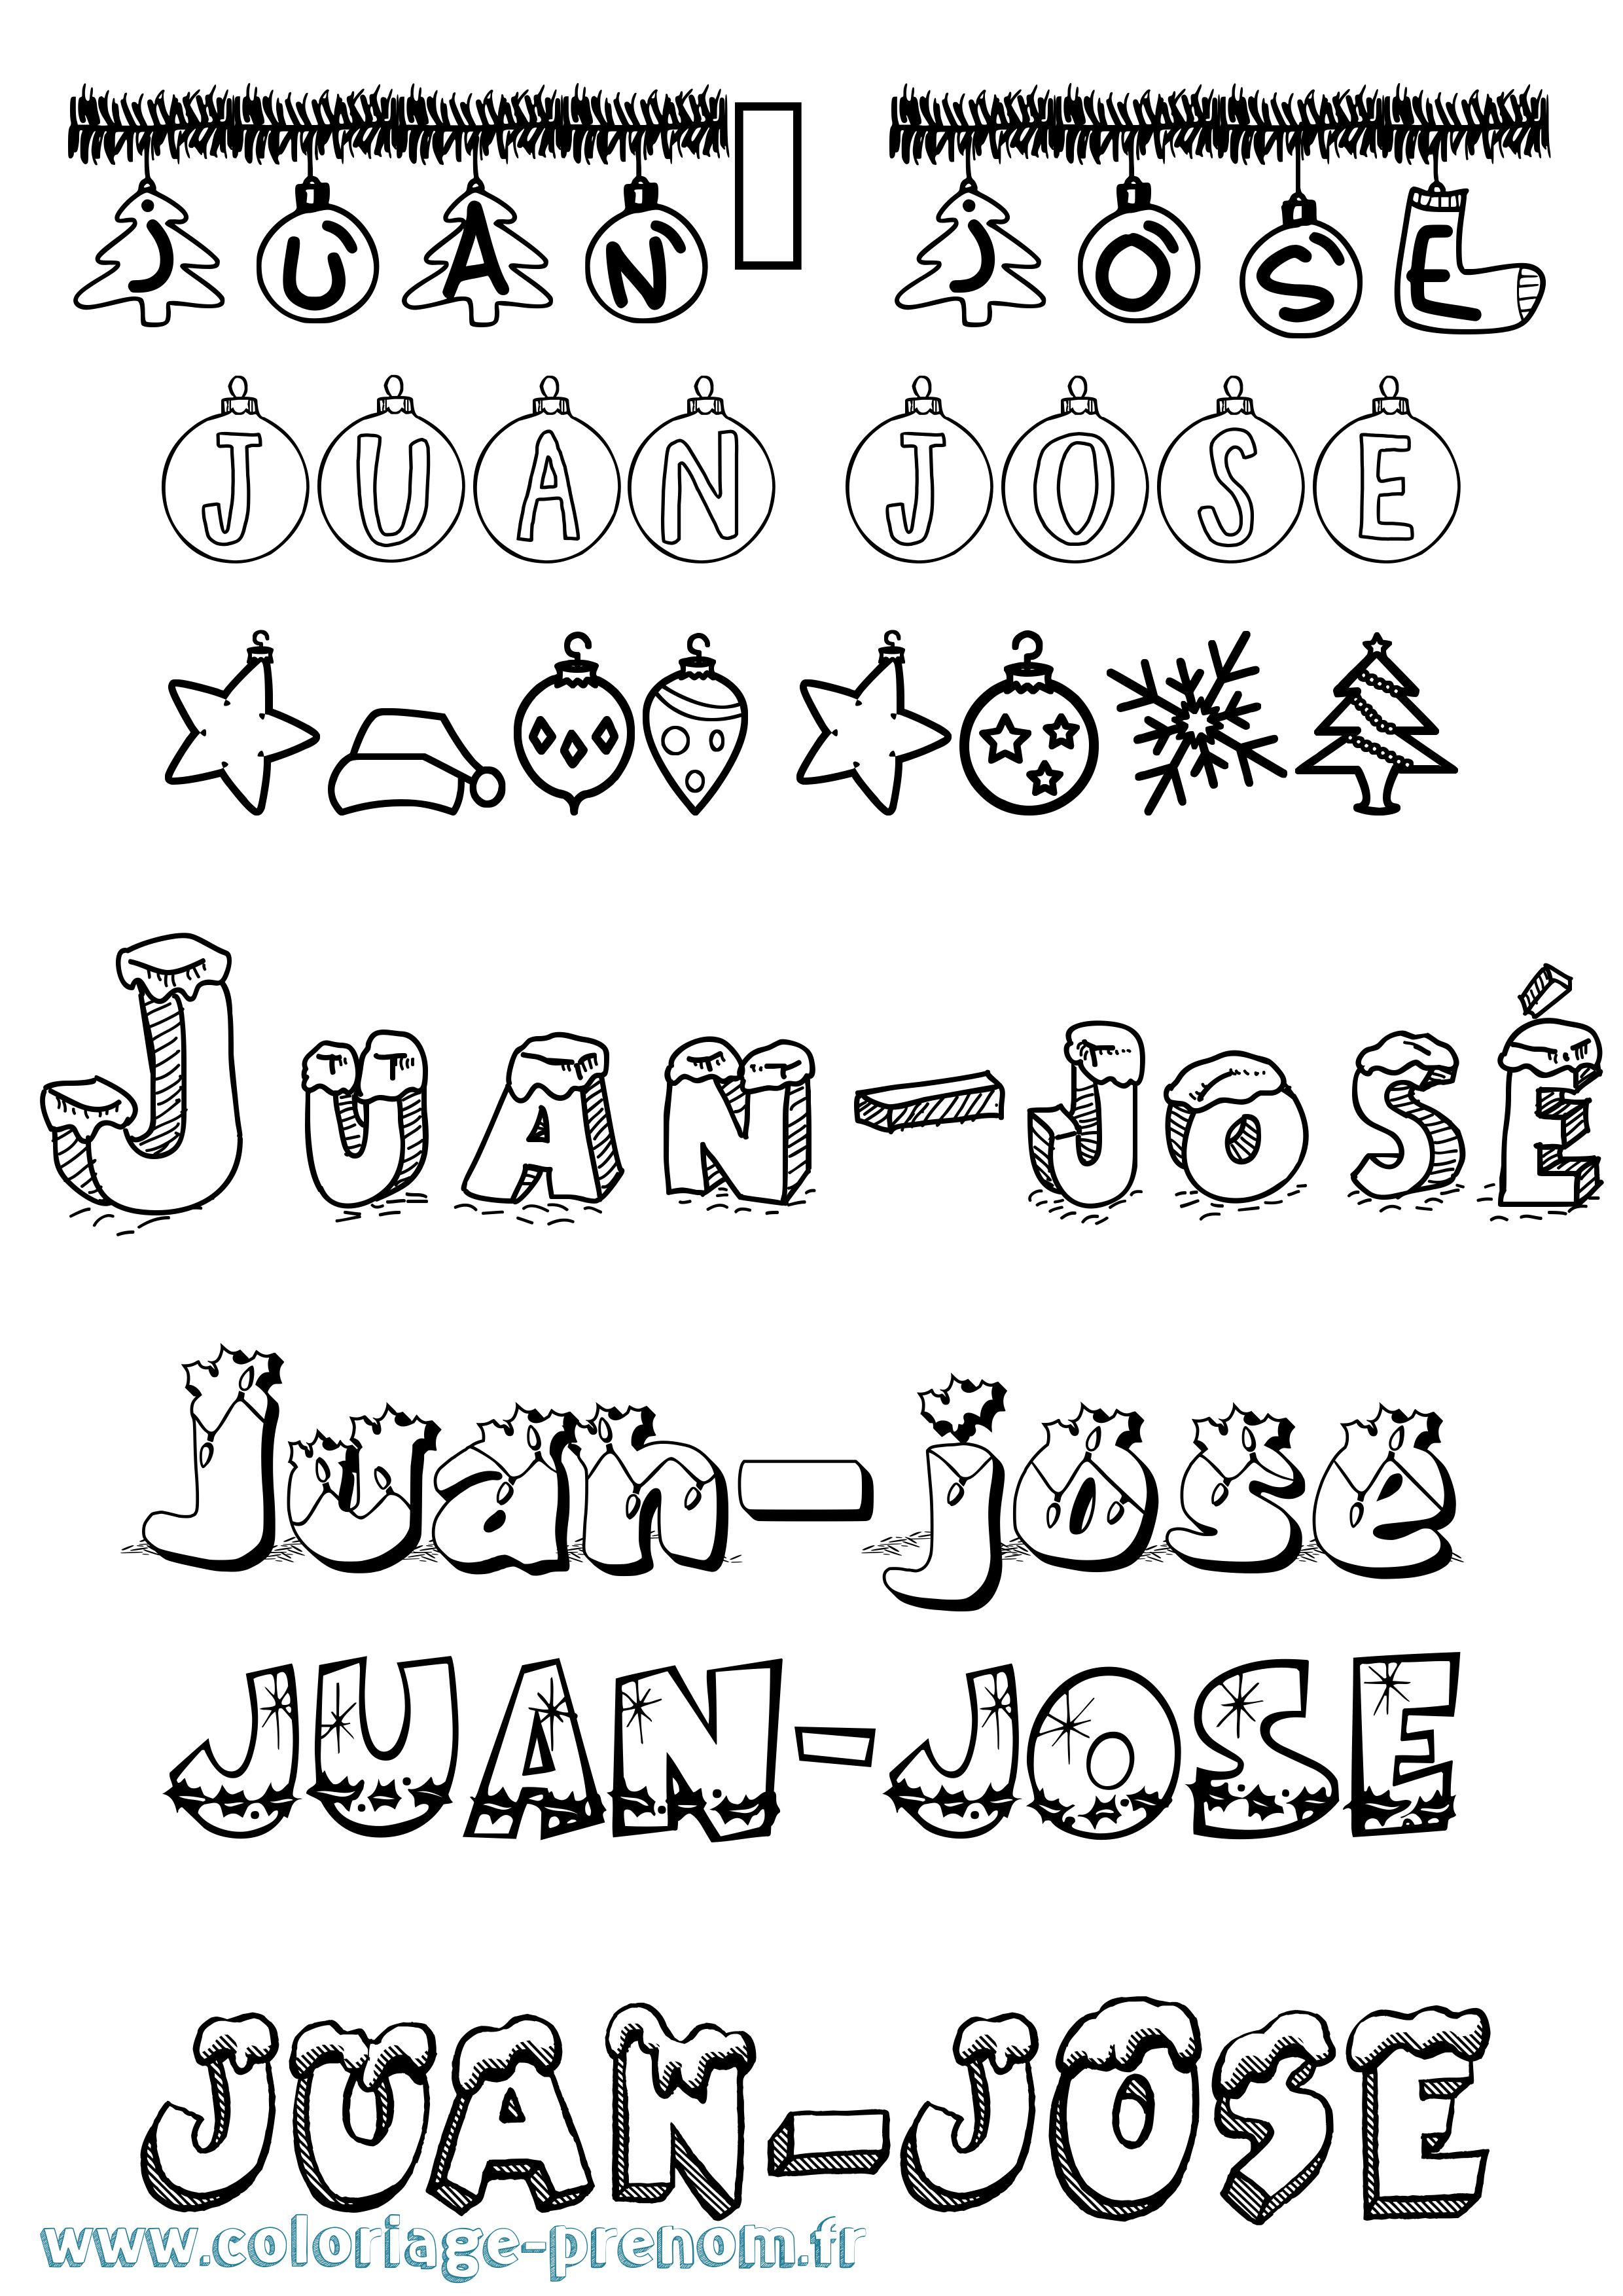 Coloriage prénom Juan-José Noël